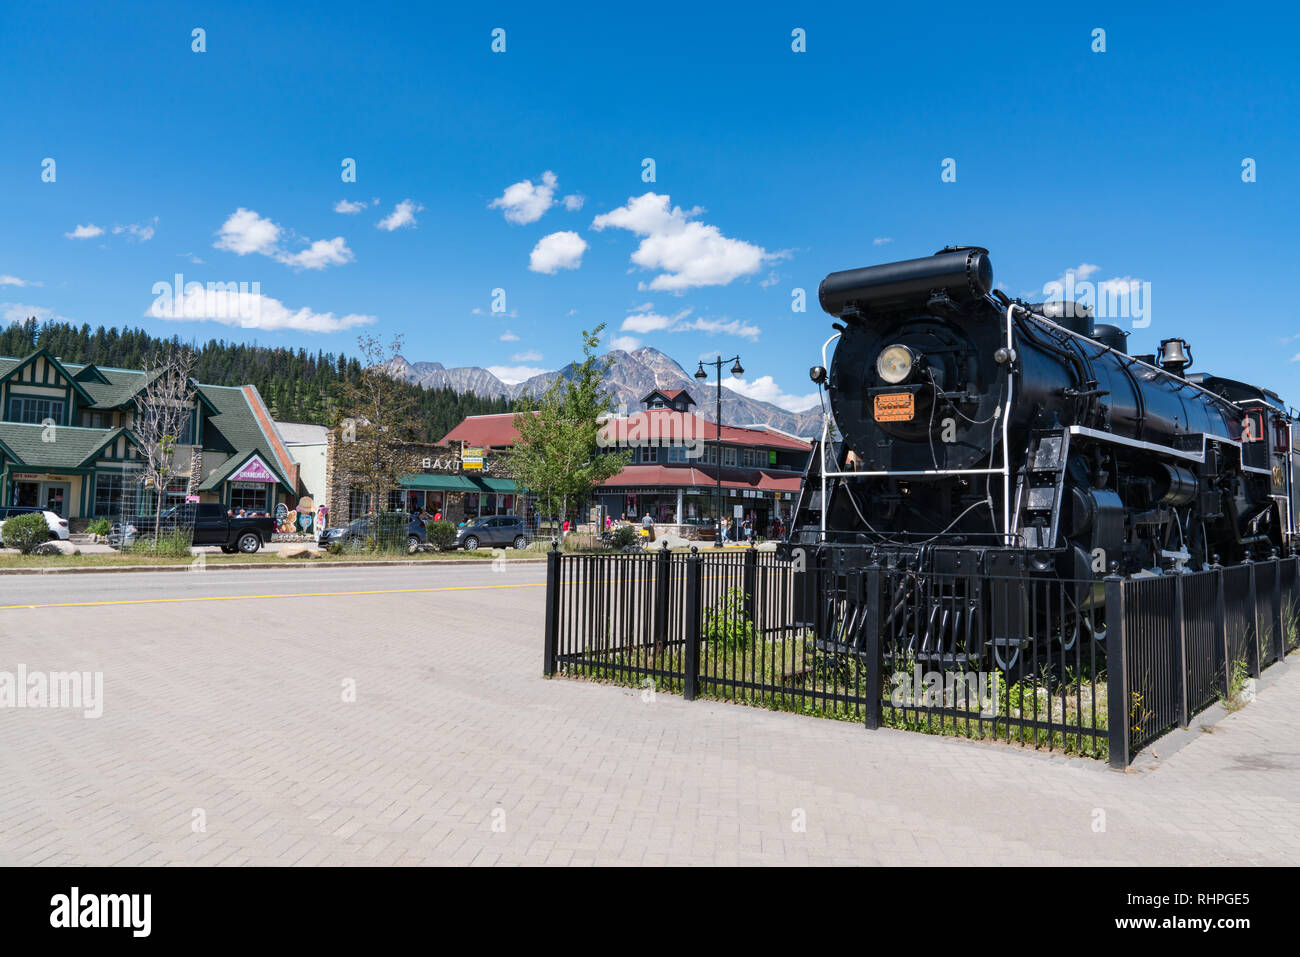 JASPER, CANADA - luglio 5, 2018: Old Canadian National Railroad locomotiva nel centro cittadino di Jasper, Alberta lungo Connaught Drive. Foto Stock